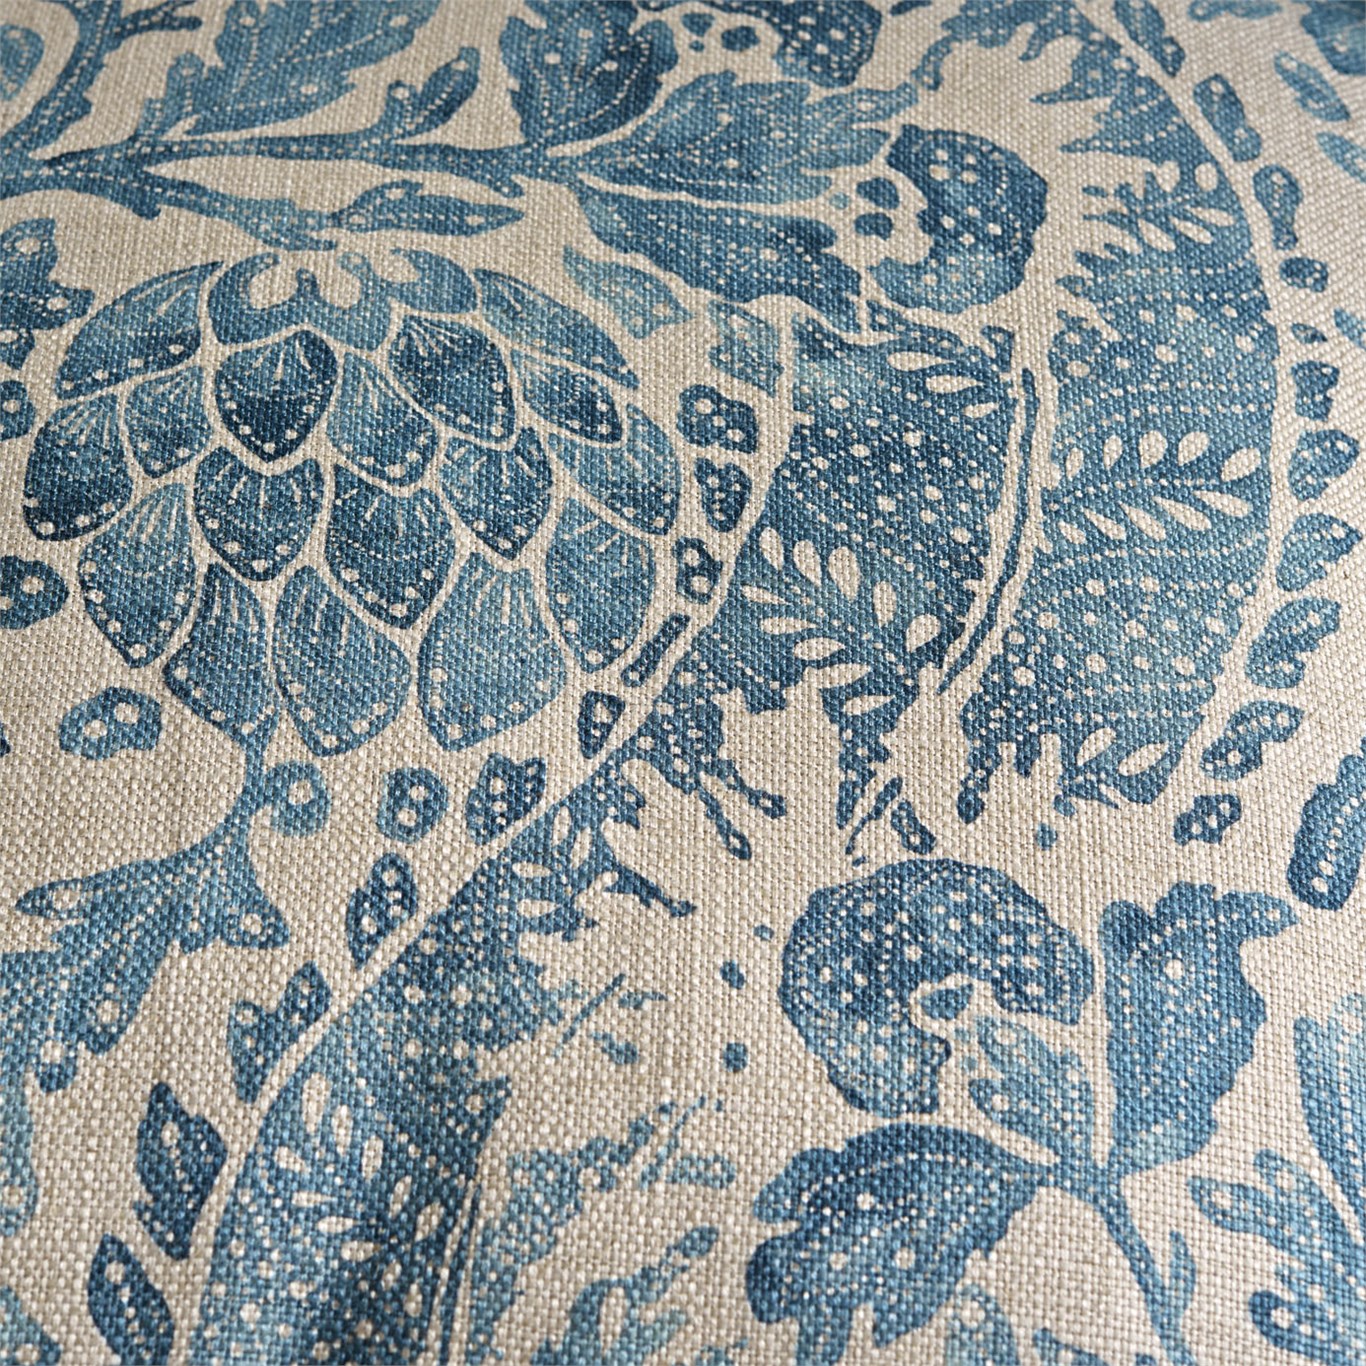 패브릭 벽지 영국,아쿠아,무늬,잎,터키 옥,직물